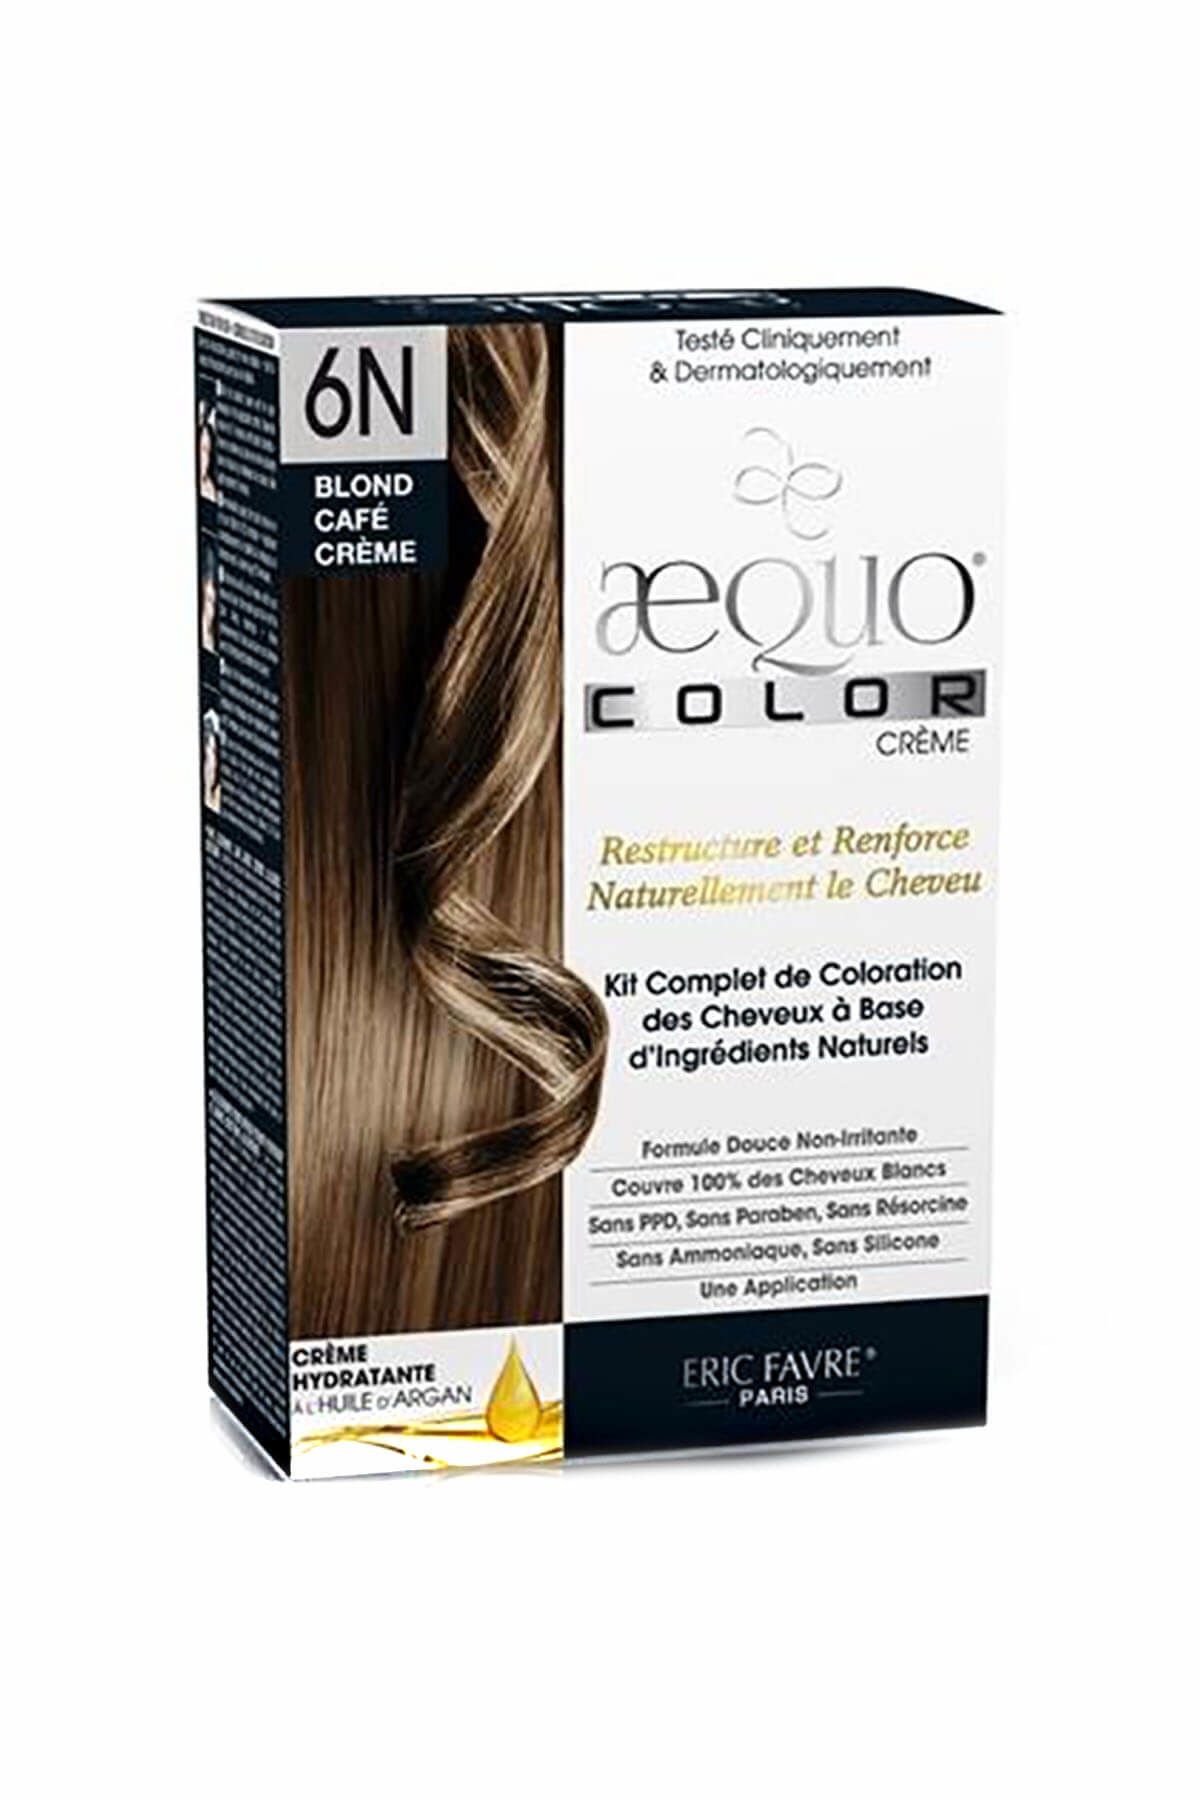 aequo color Organik Açık Kahverengi Saç Boyası - 6N Cafe Creme Blonde 3525722013543